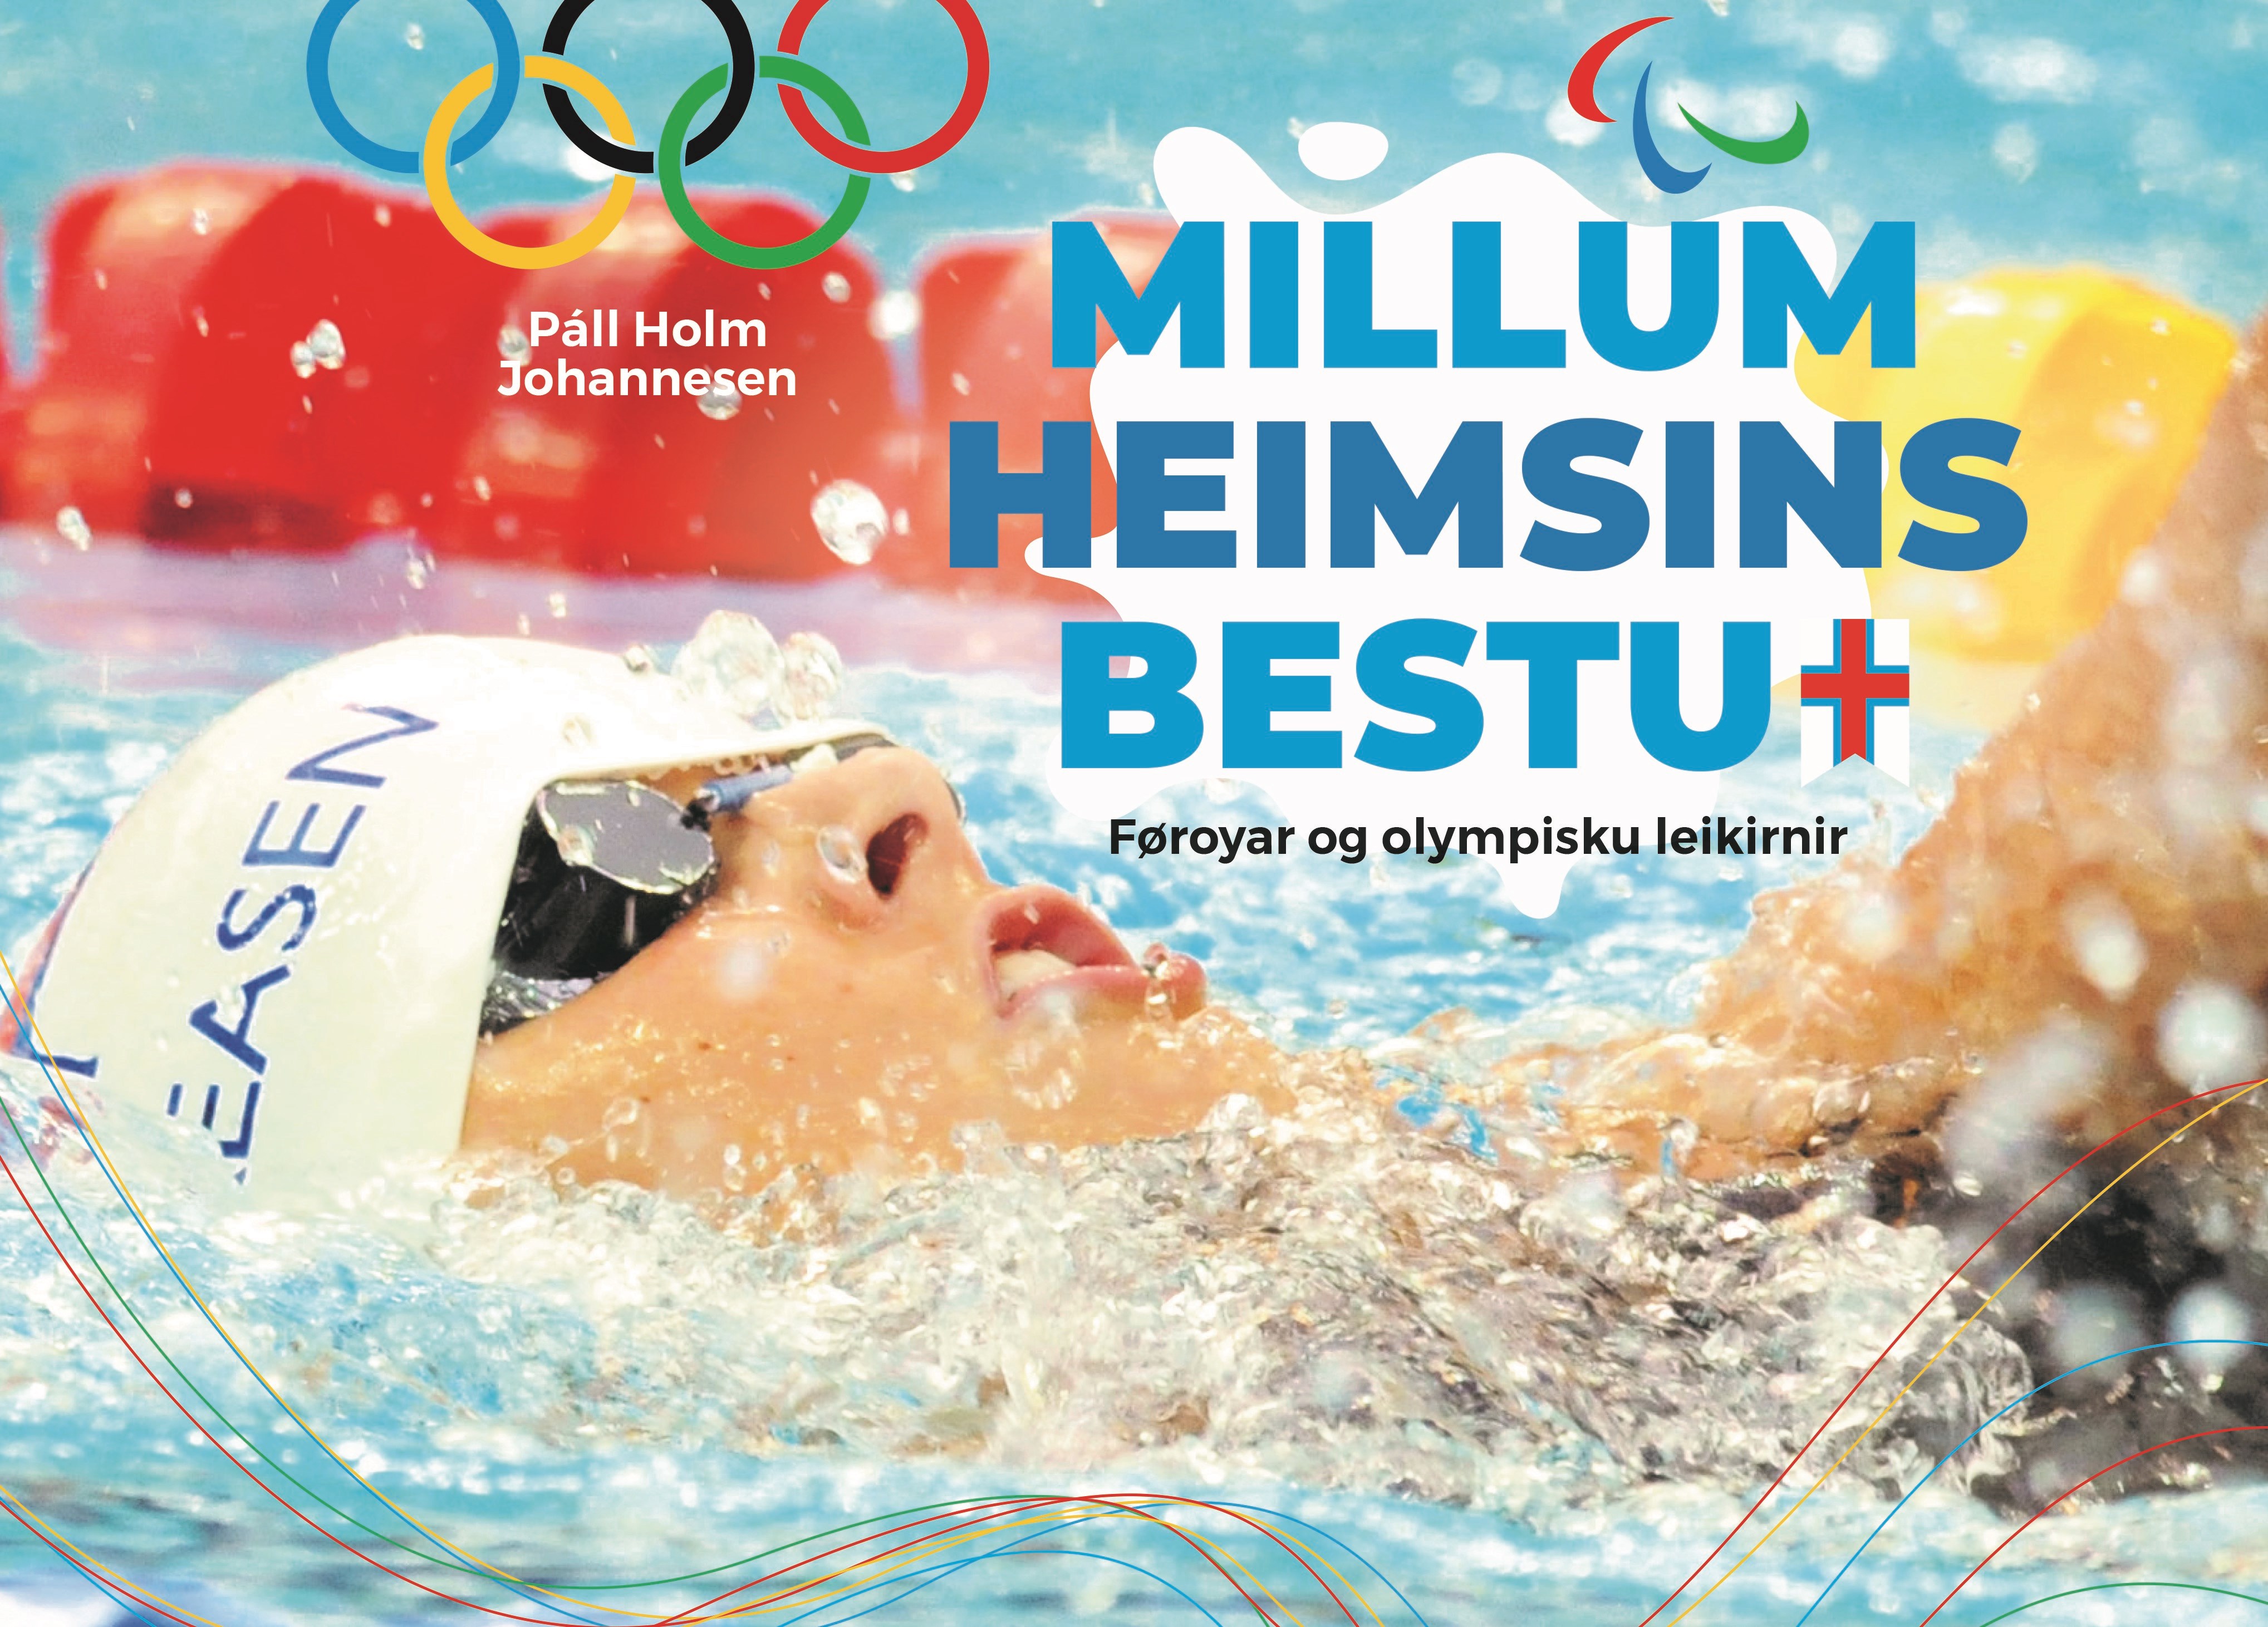 Millum heimsins bestu - Føroyar og olympisku leikirnir